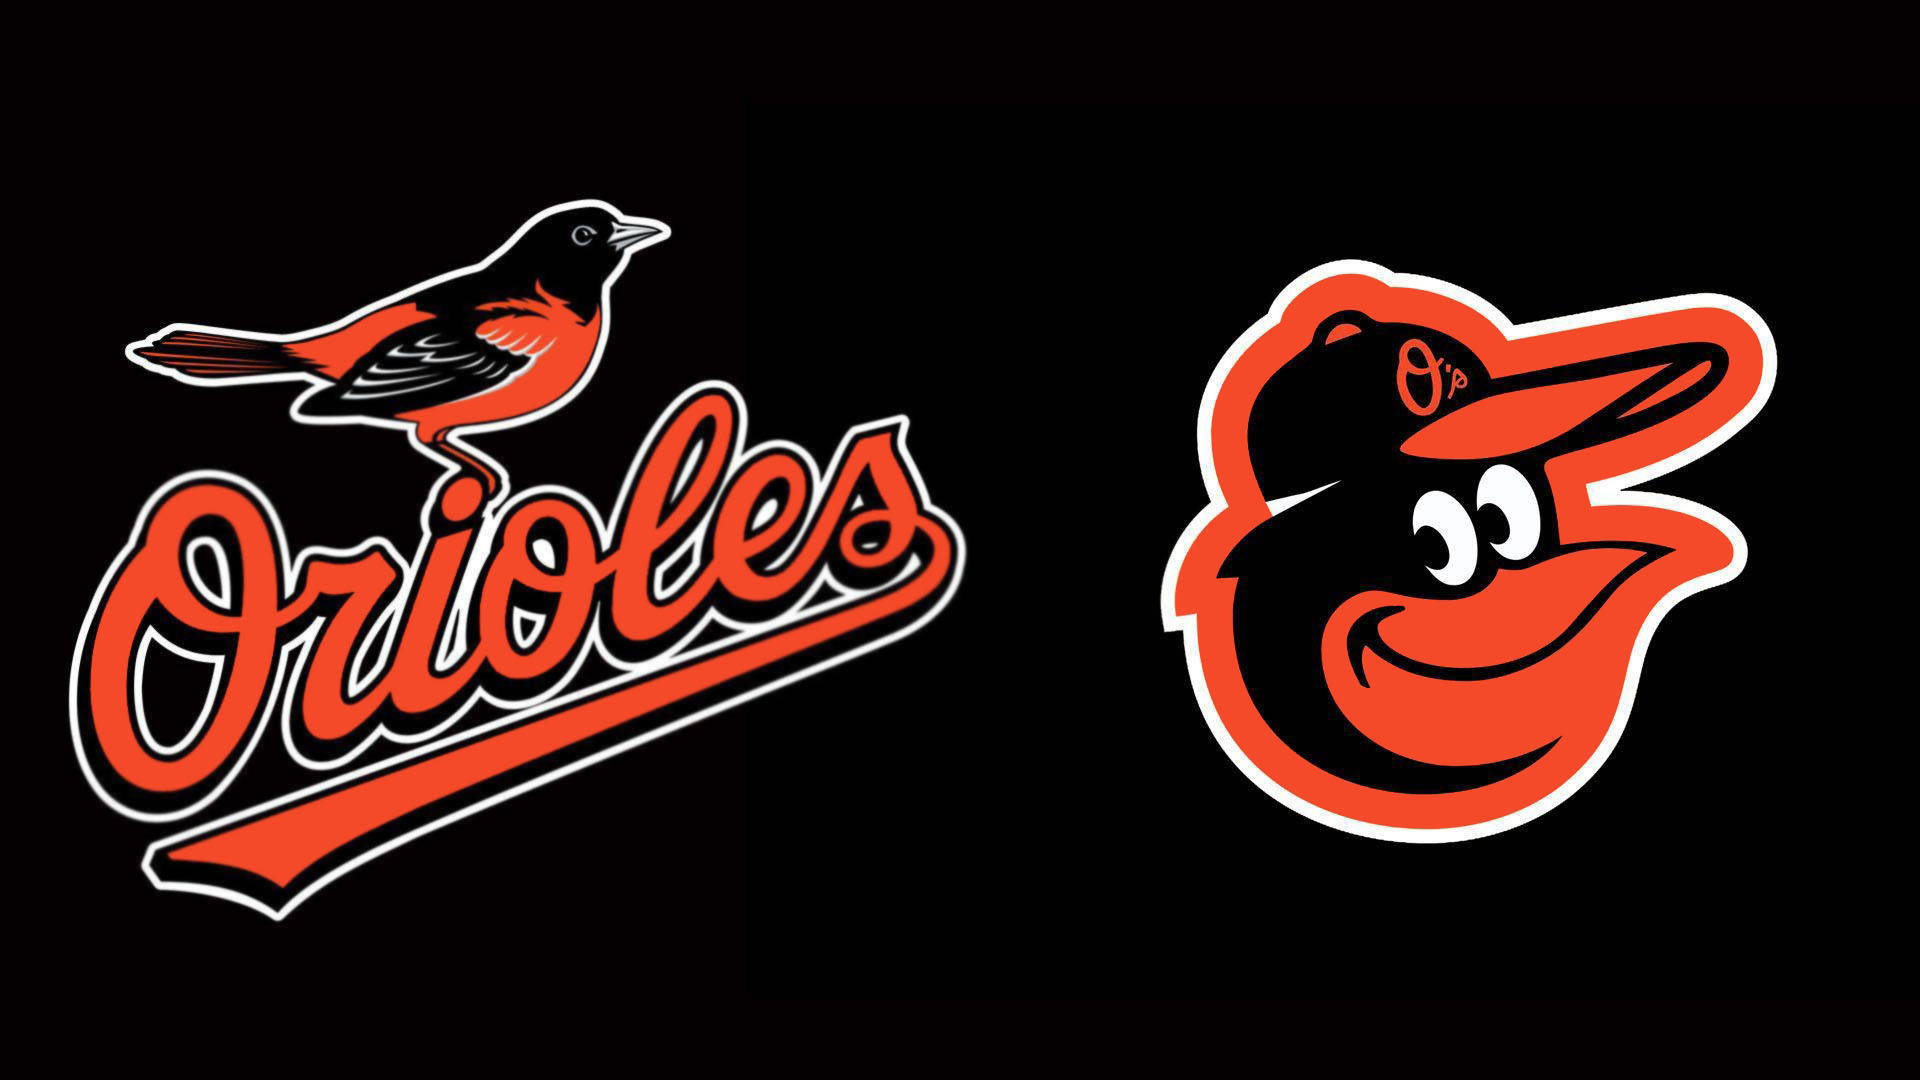 Baltimore Orioles Team Logos